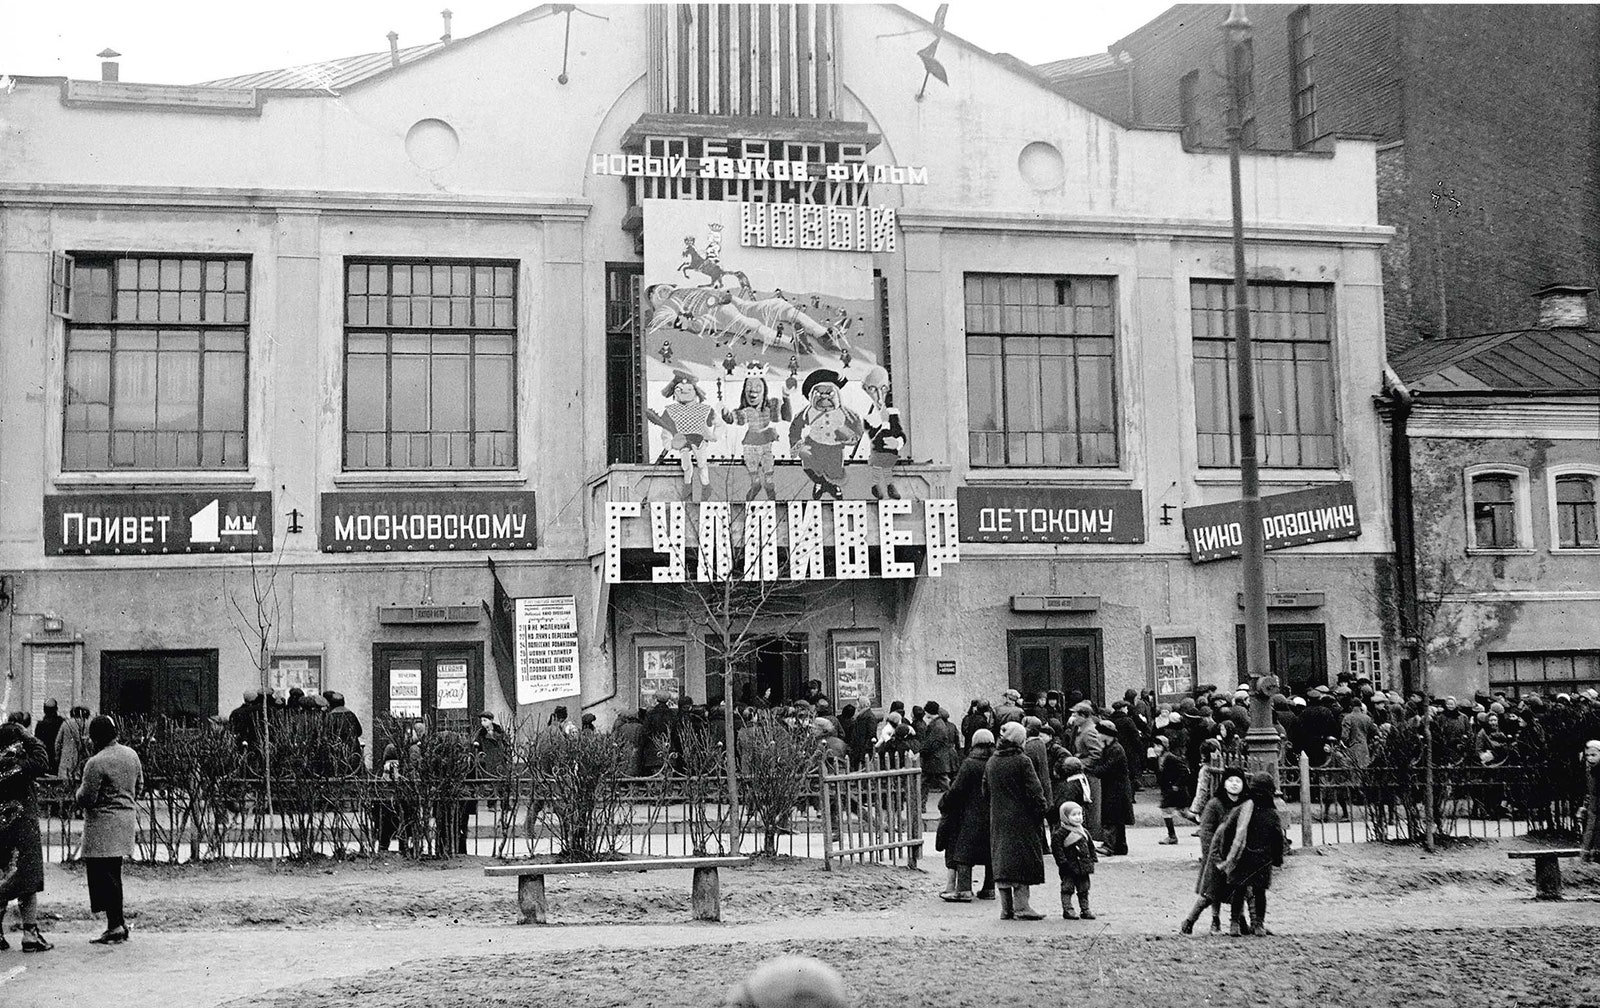 Кинотеатр “Таганский”. Московские школьники в очереди на детский киносеанс. На фасаде реклама фильма “Новый Гулливер”....